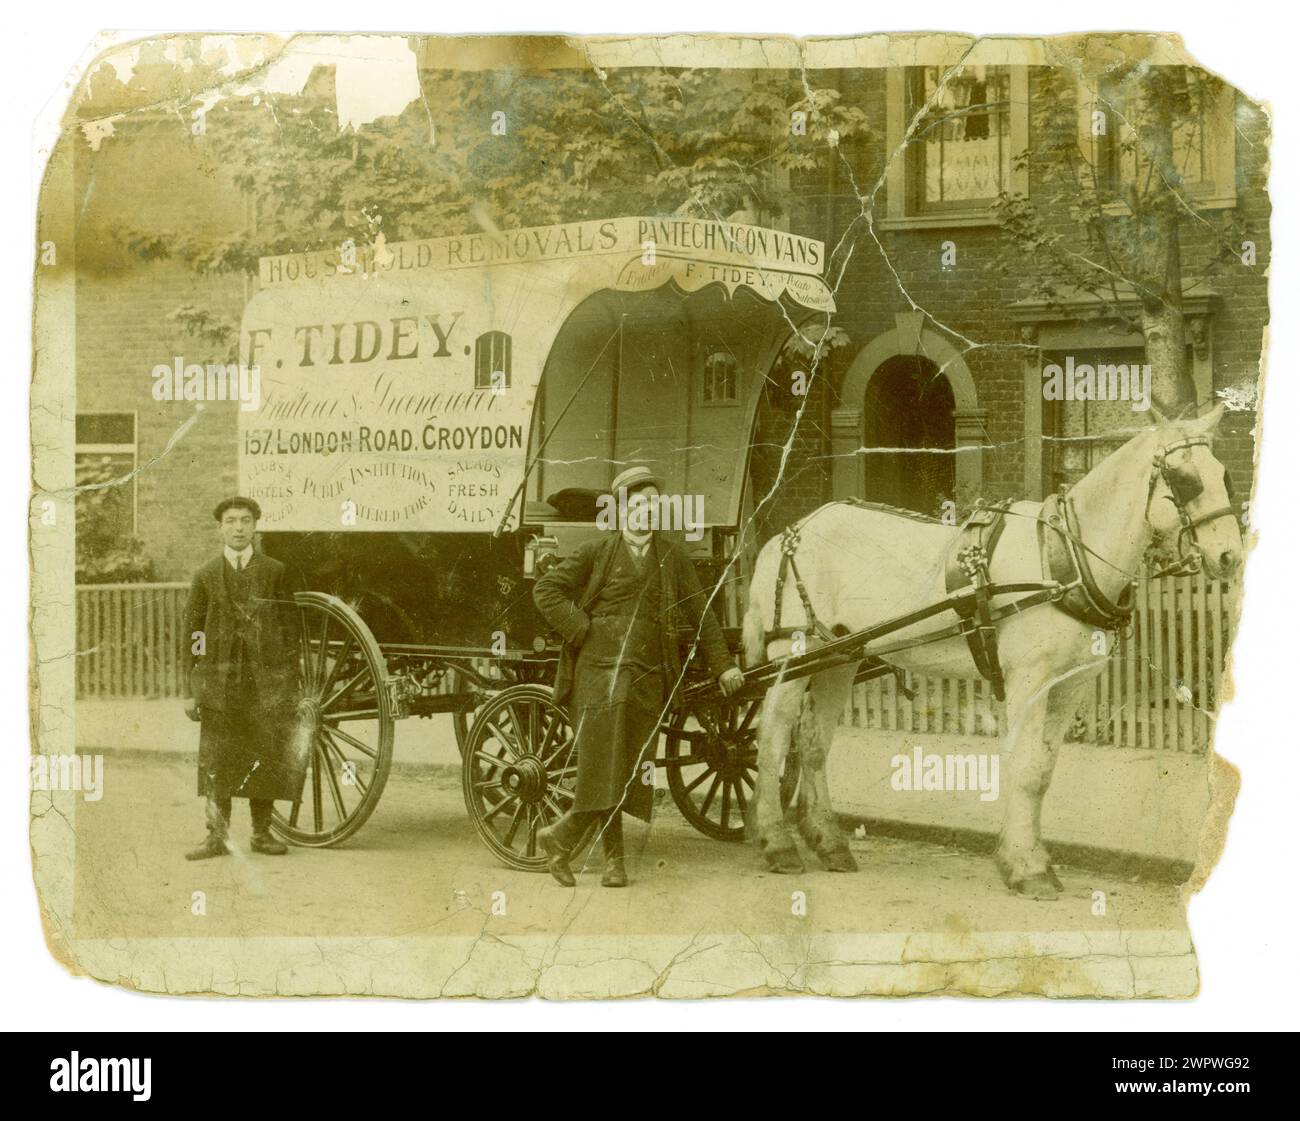 Cartolina originale dei primi anni '1900, era del Titanic, carrello trainato da cavalli di F Tidey Fruiterers & greengrocer, venditore di patate, & Household Removals Pantechnicon Vans (a removals co.), spot pubblicitario. I locali del negozio si trovavano al 157 London Road, Croydon, Londra, Regno Unito, intorno al 1912 Foto Stock